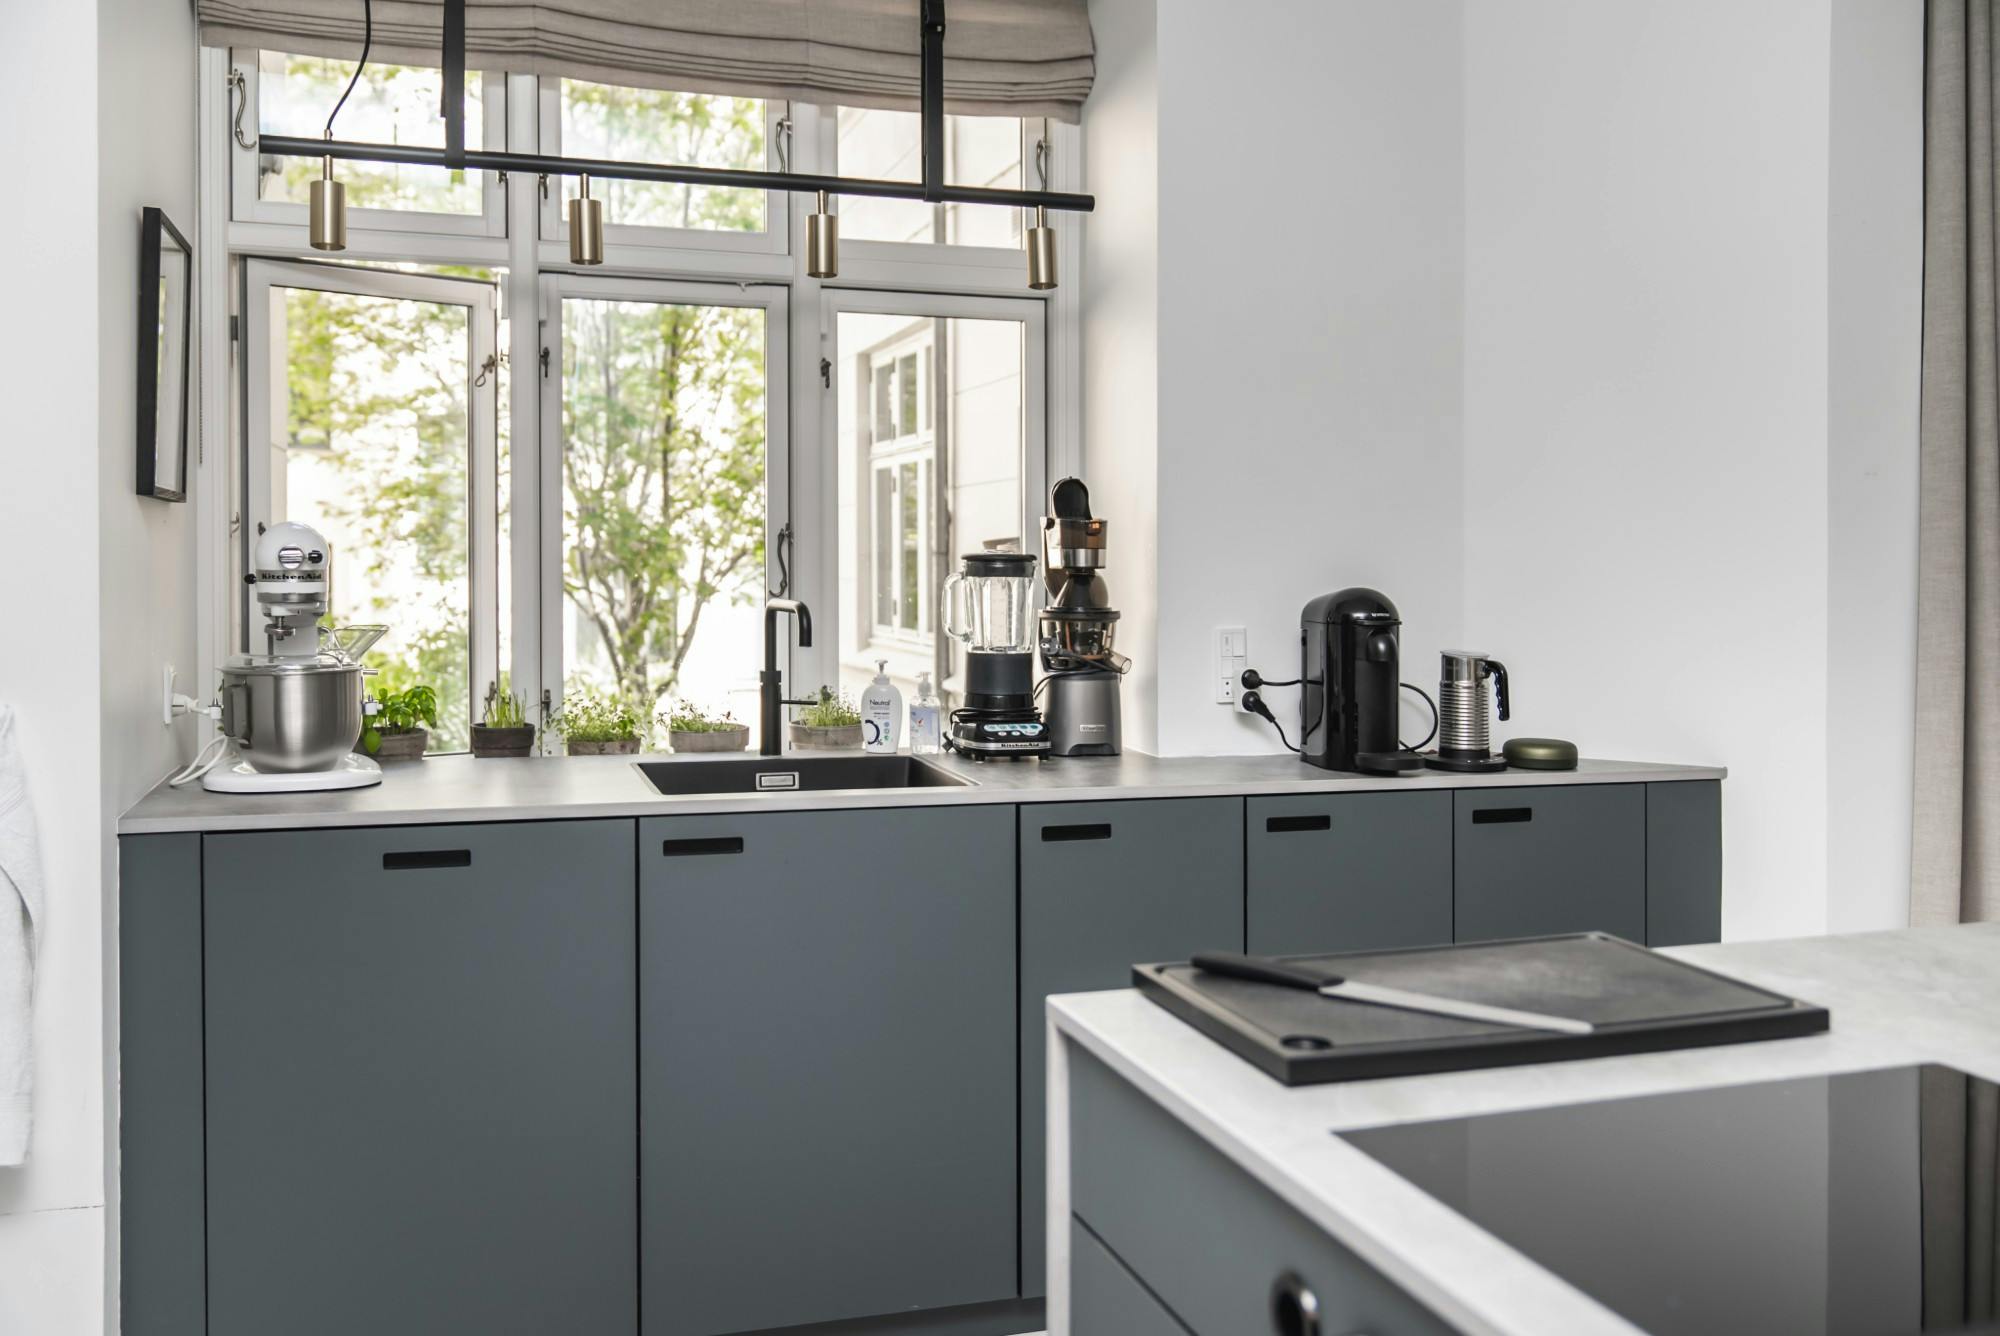 Bildnummer 38 des aktuellen Abschnitts von Professional features for a domestic kitchen worktop von Cosentino Deutschland